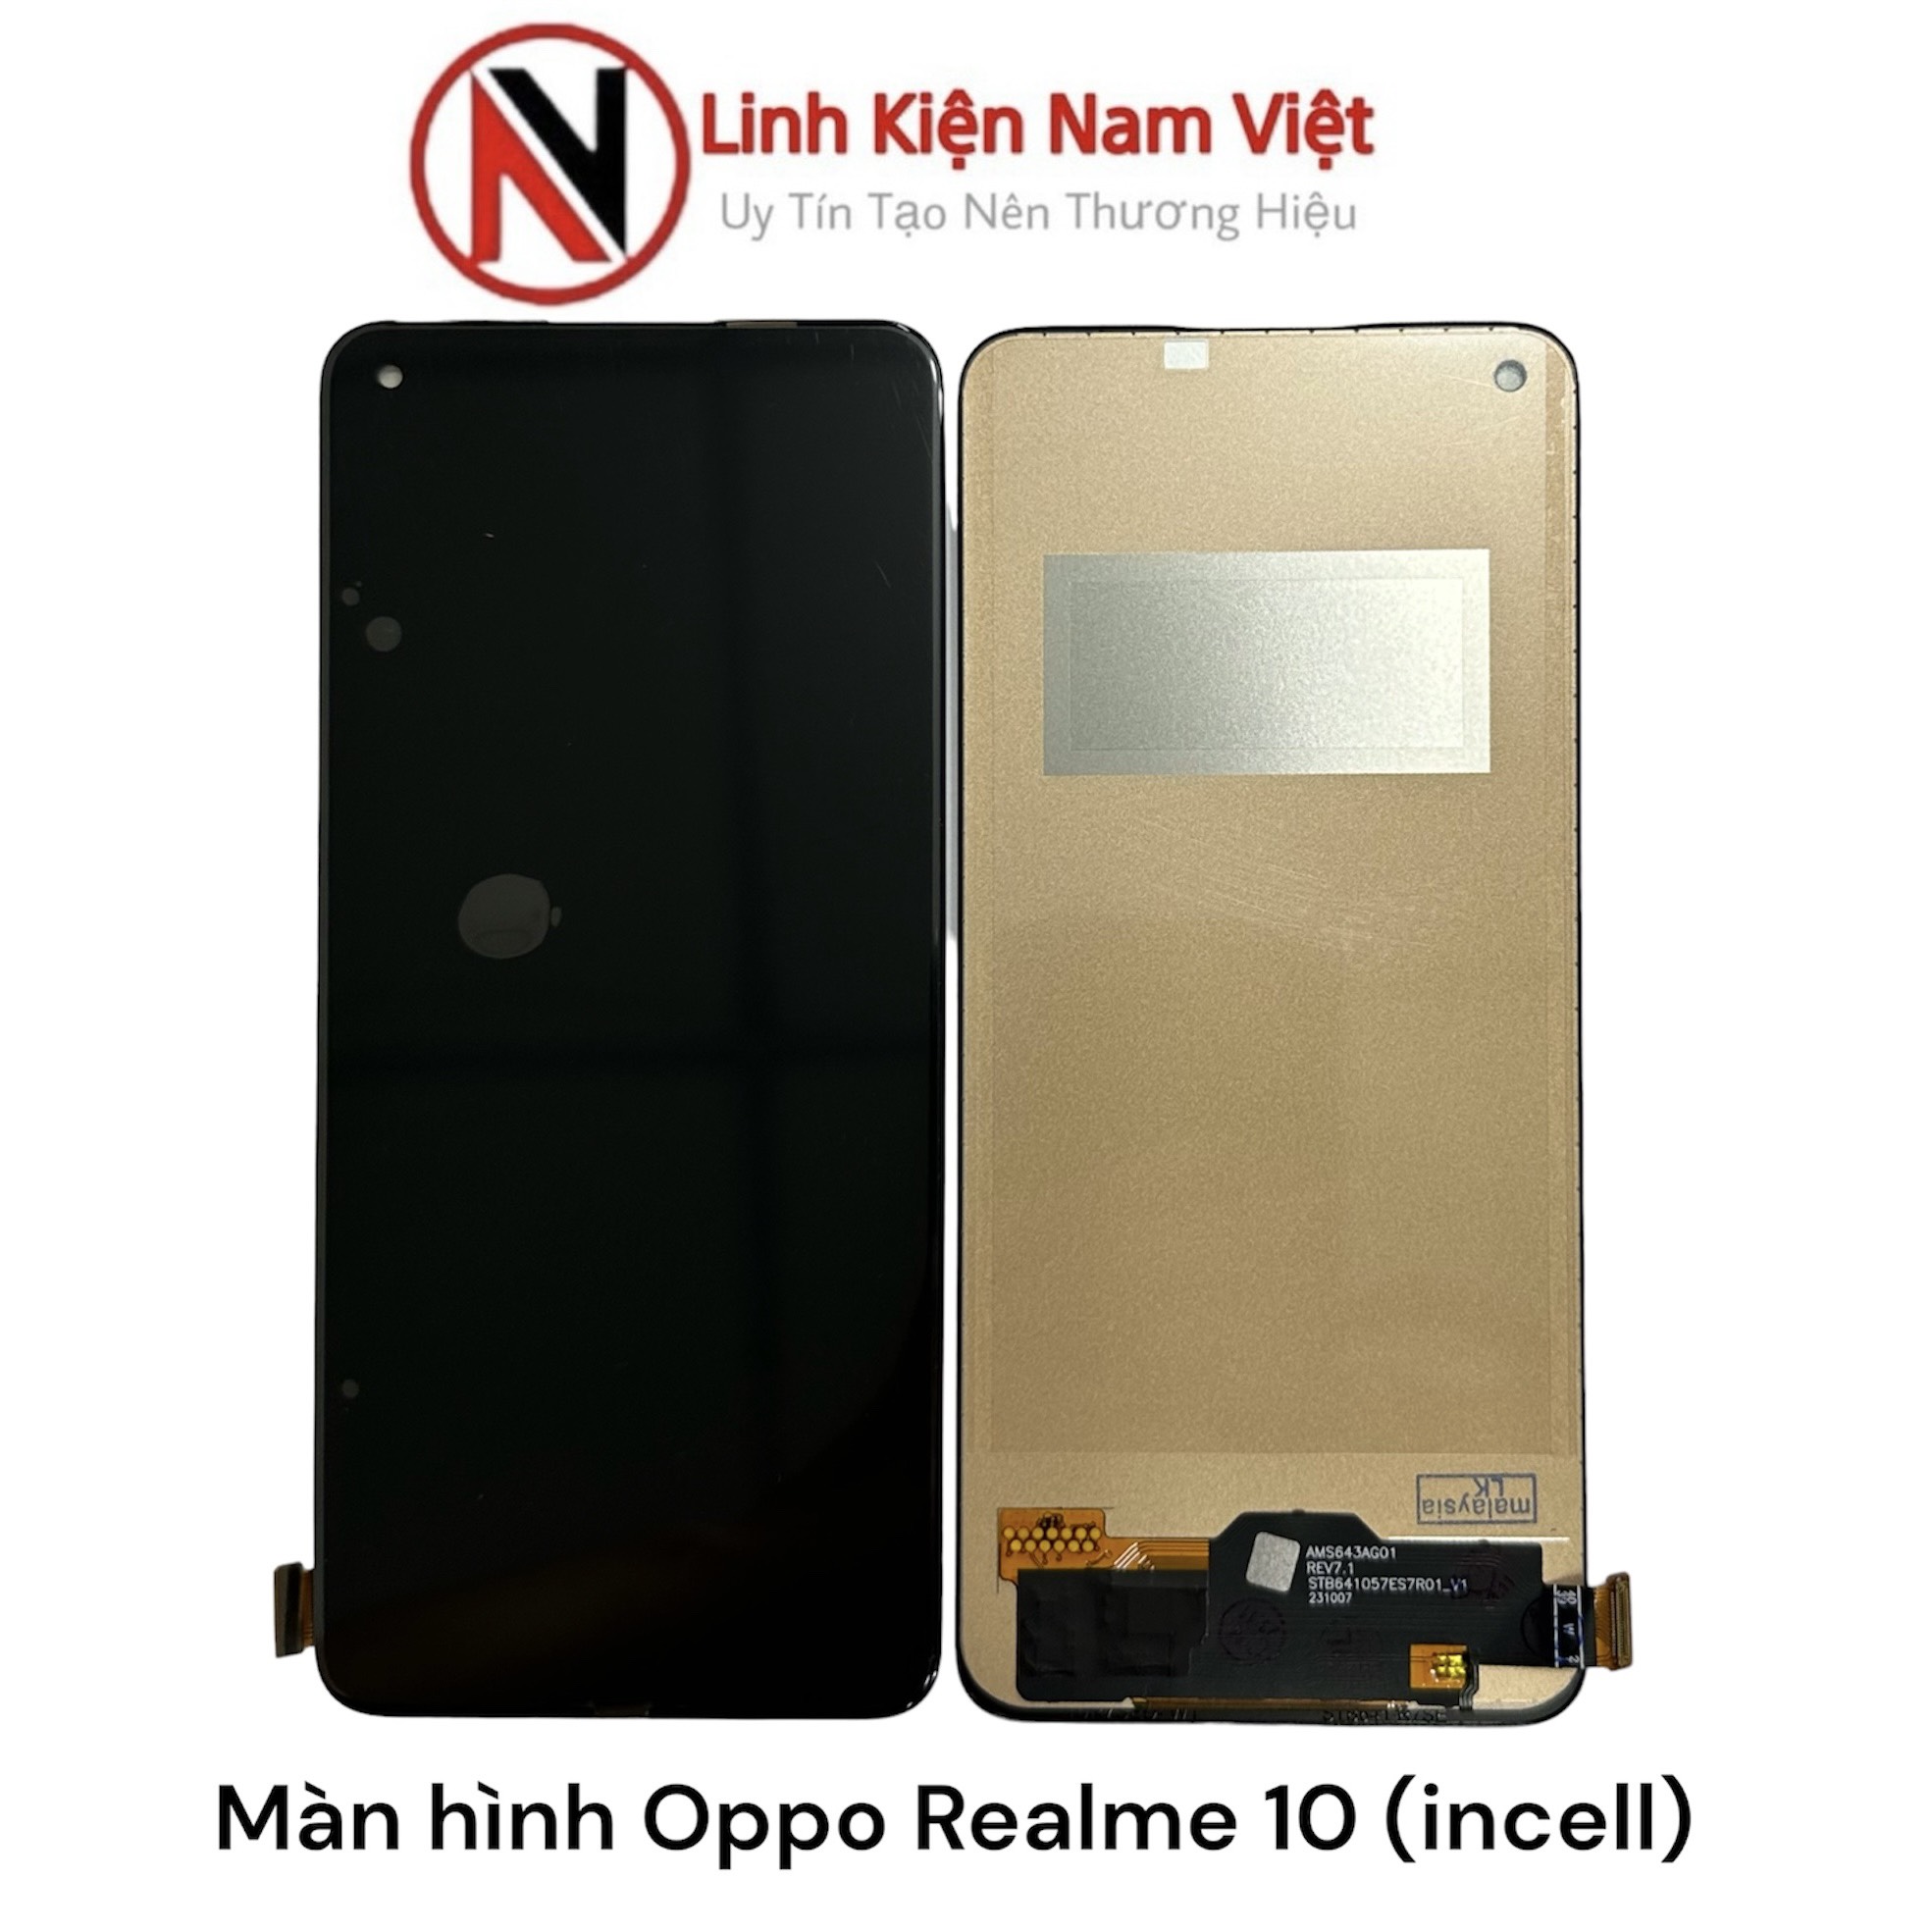 Màn hình Oppo Realme 10 (incell)